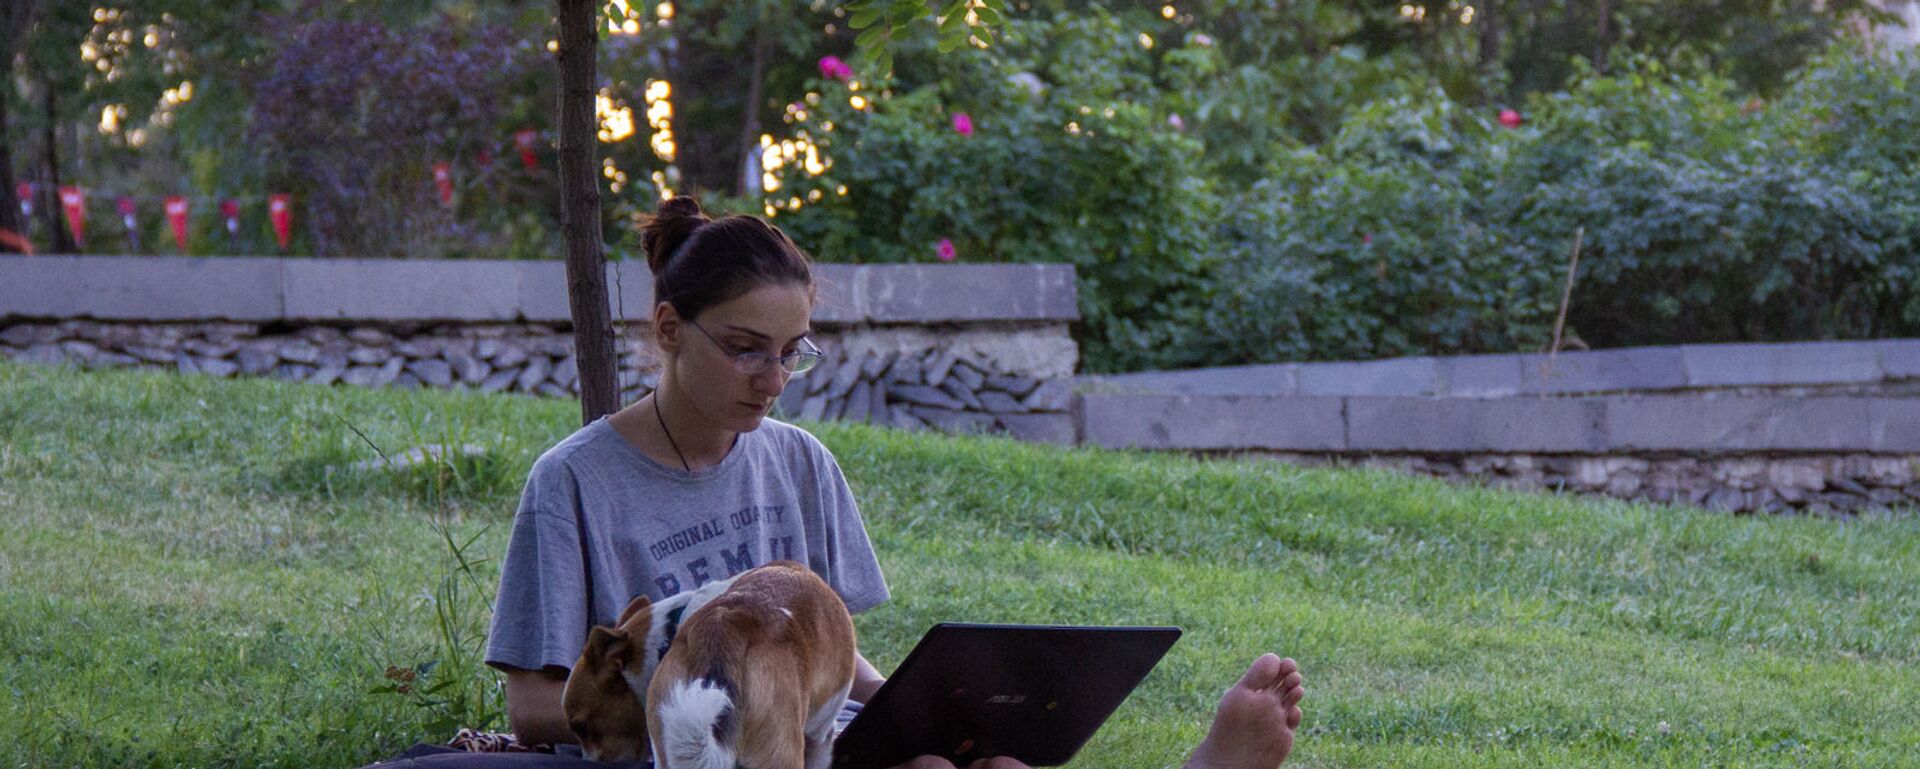 Девушка с ноутбуком и собакой на газоне в парке Тумо - Sputnik Армения, 1920, 13.09.2021